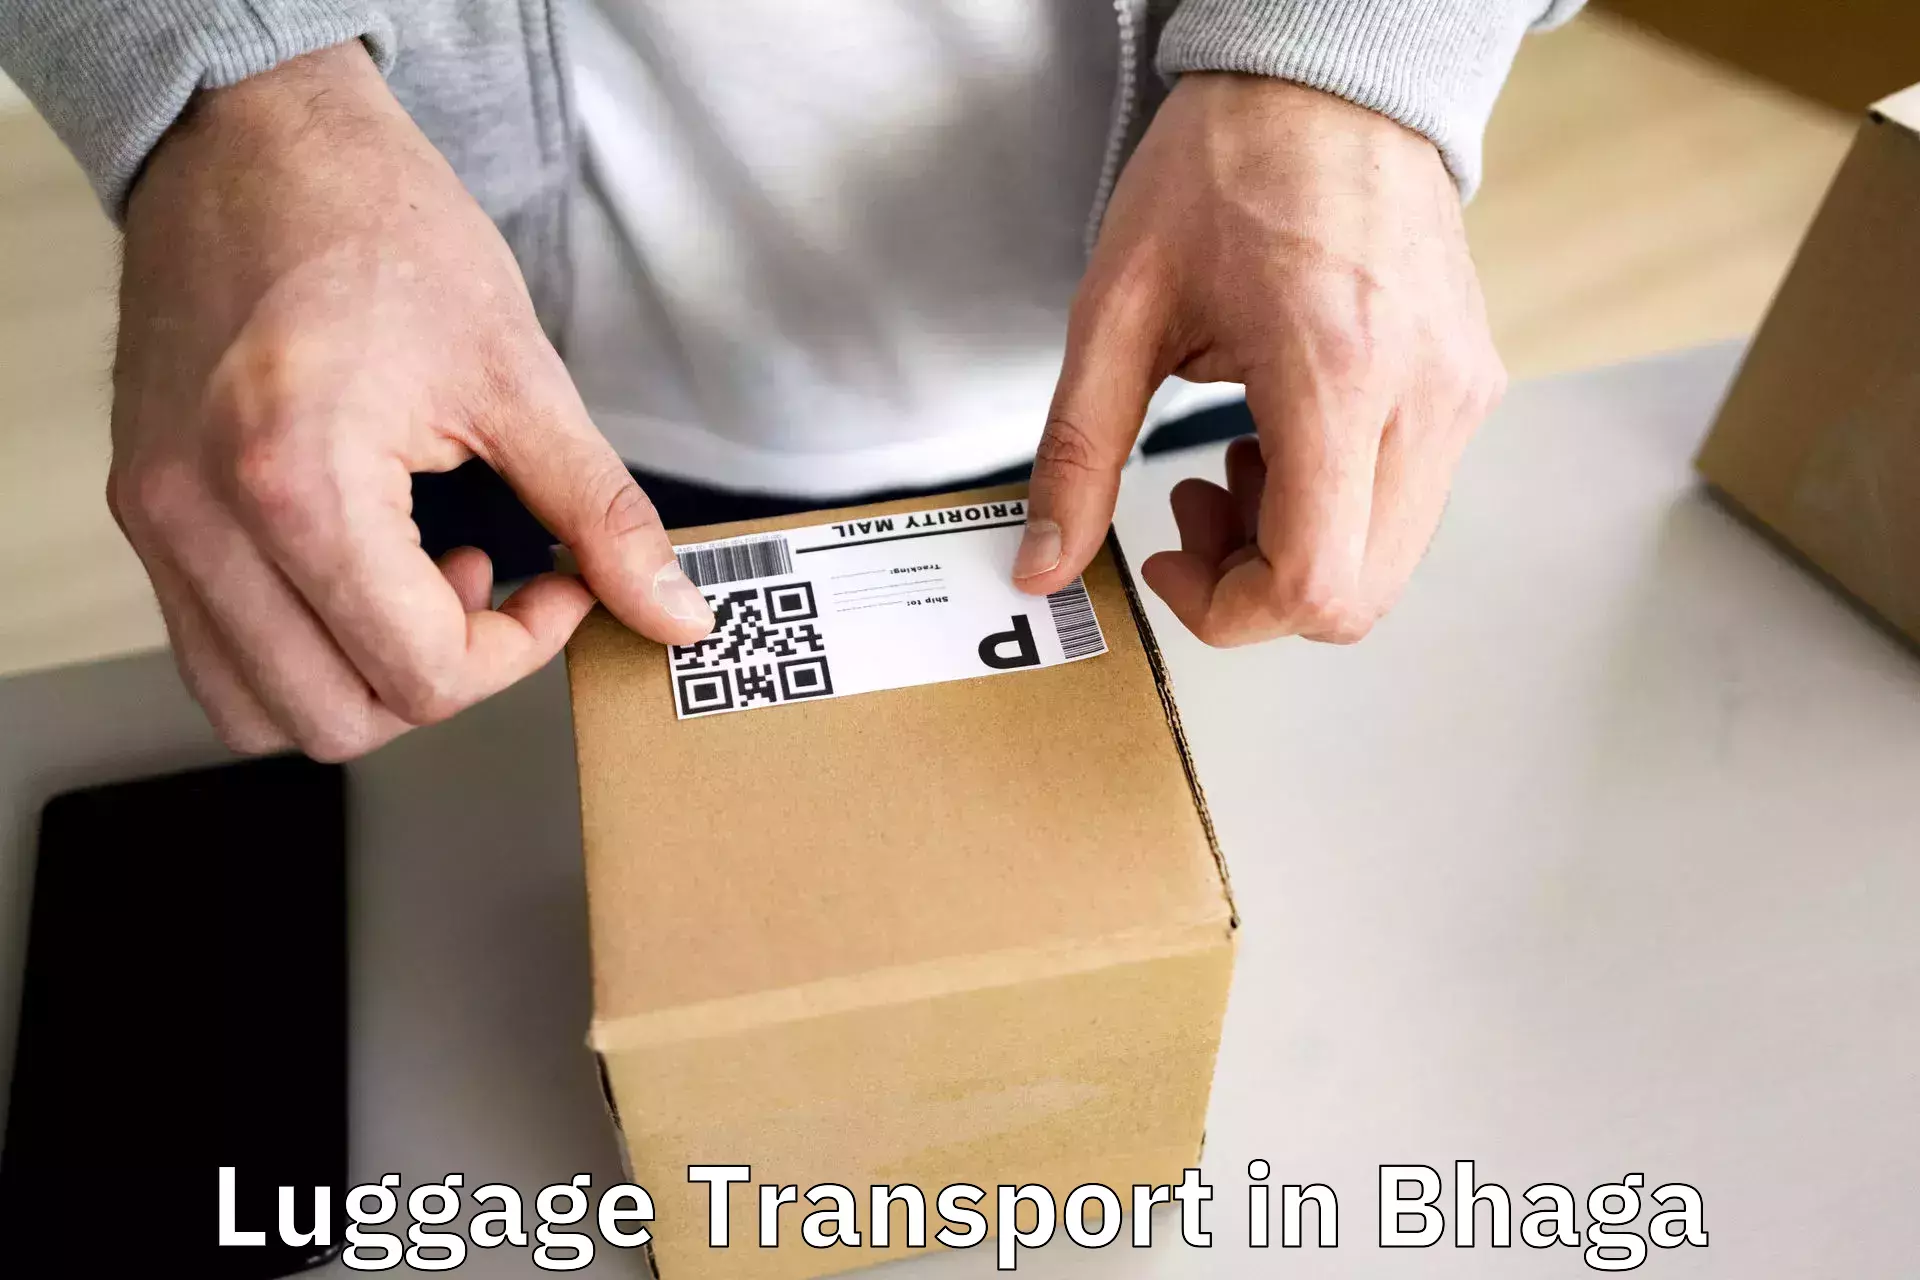 Luggage shipping efficiency in Bhaga